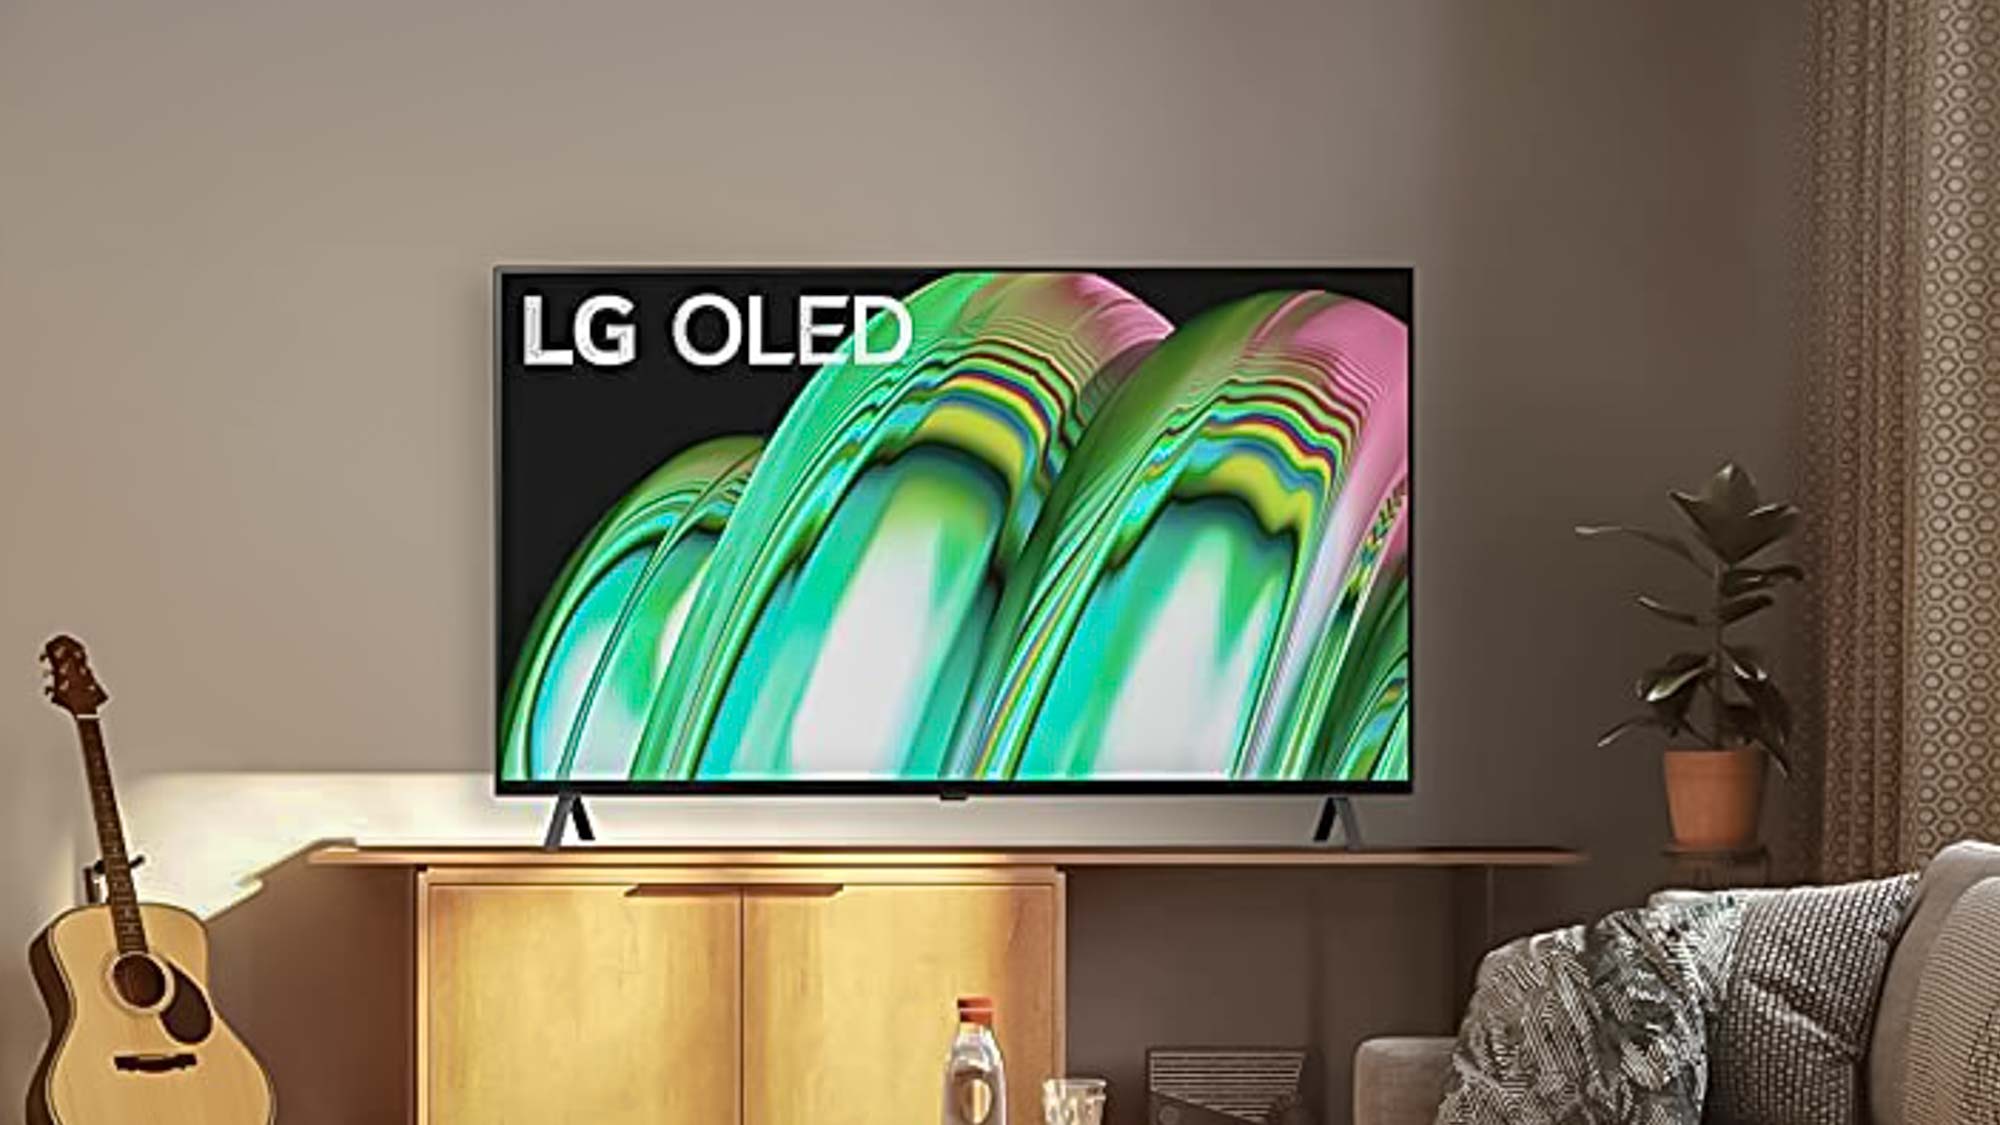 LG A2 OLED TV se muestra en la sala de estar